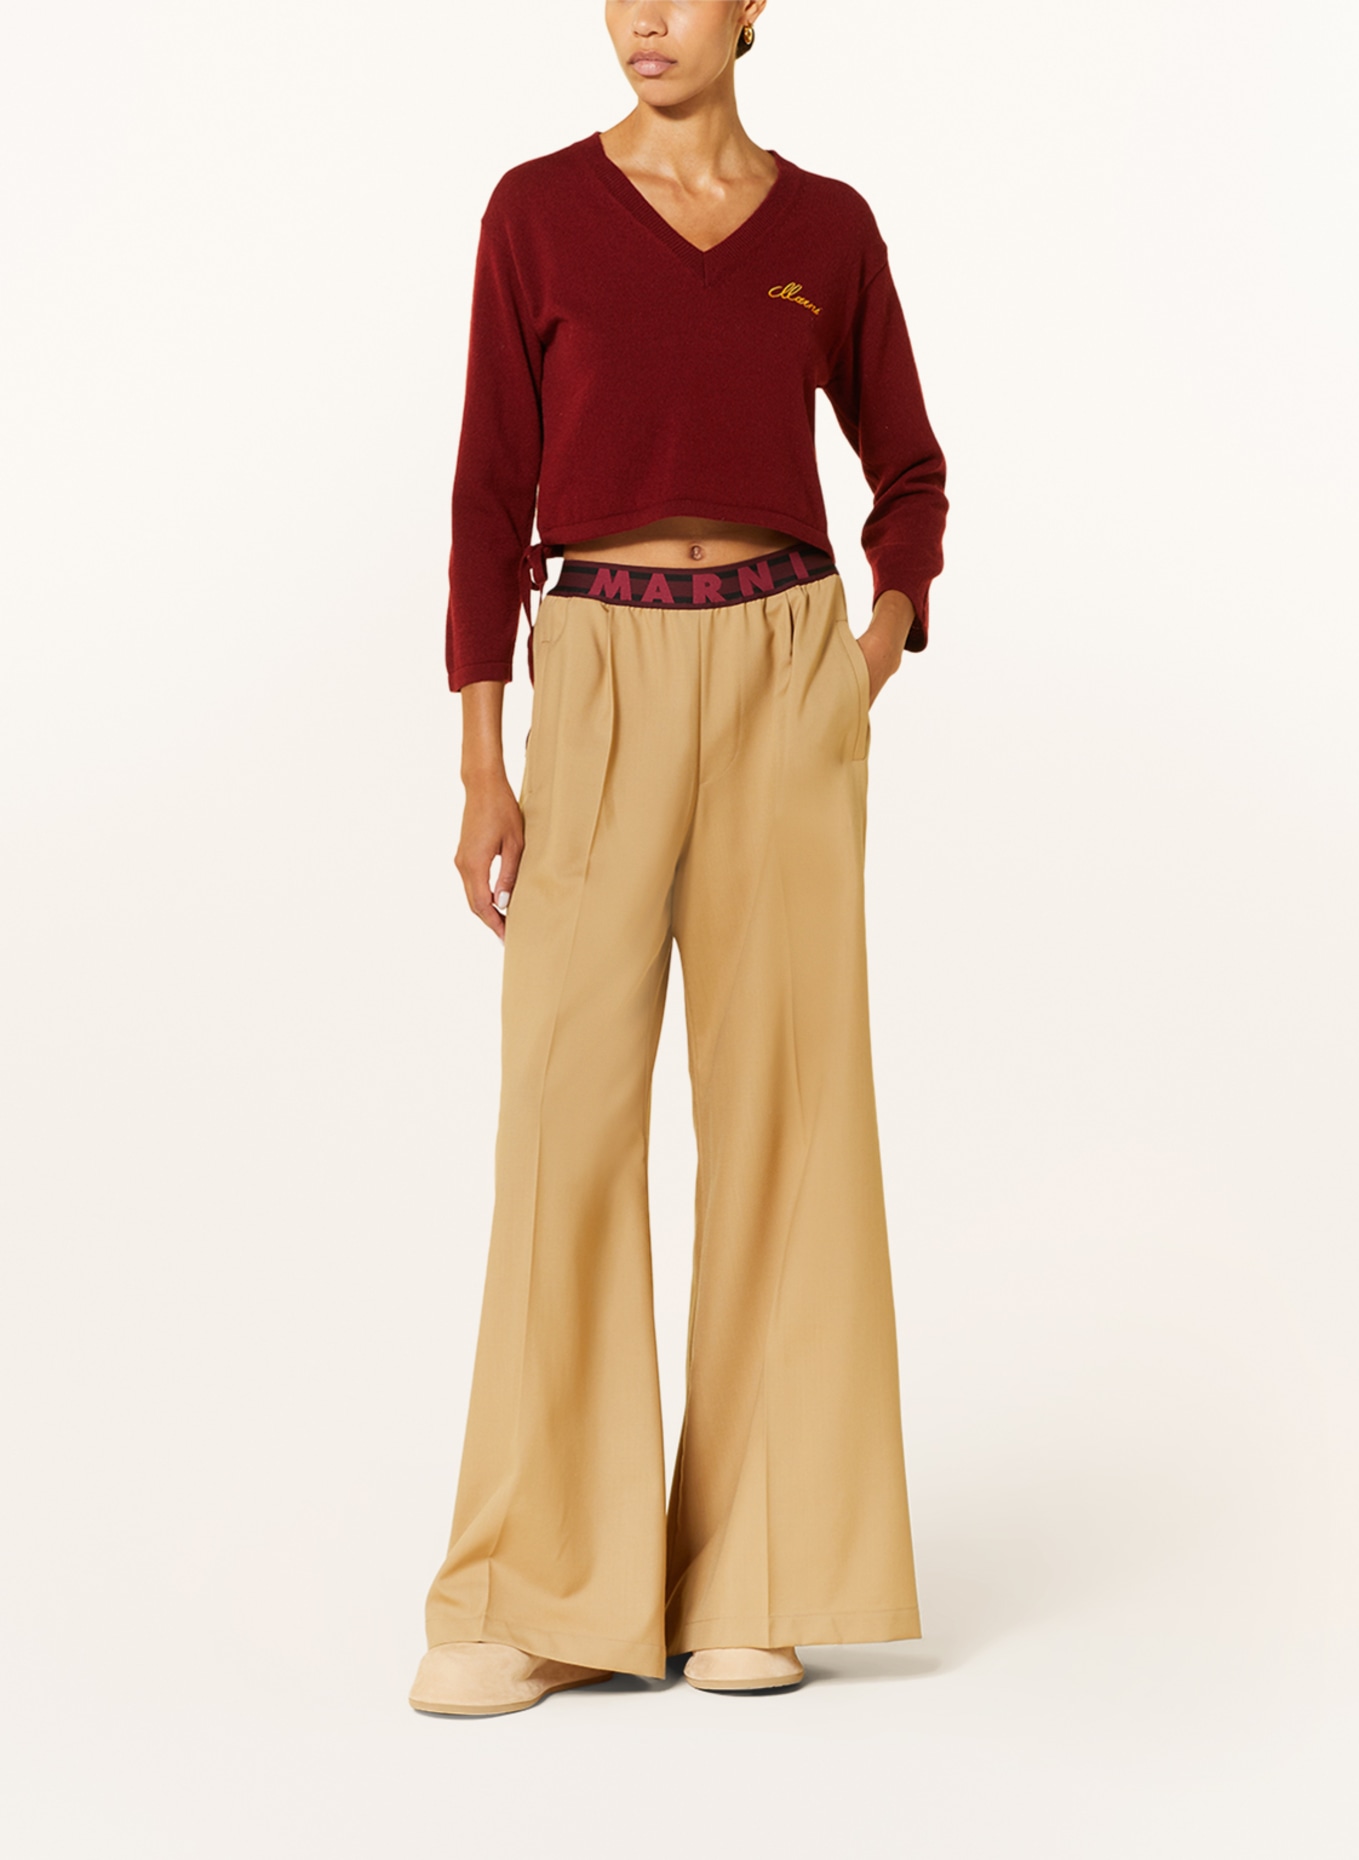 MARNI Cashmere-Pullover, Farbe: DUNKELROT (Bild 2)